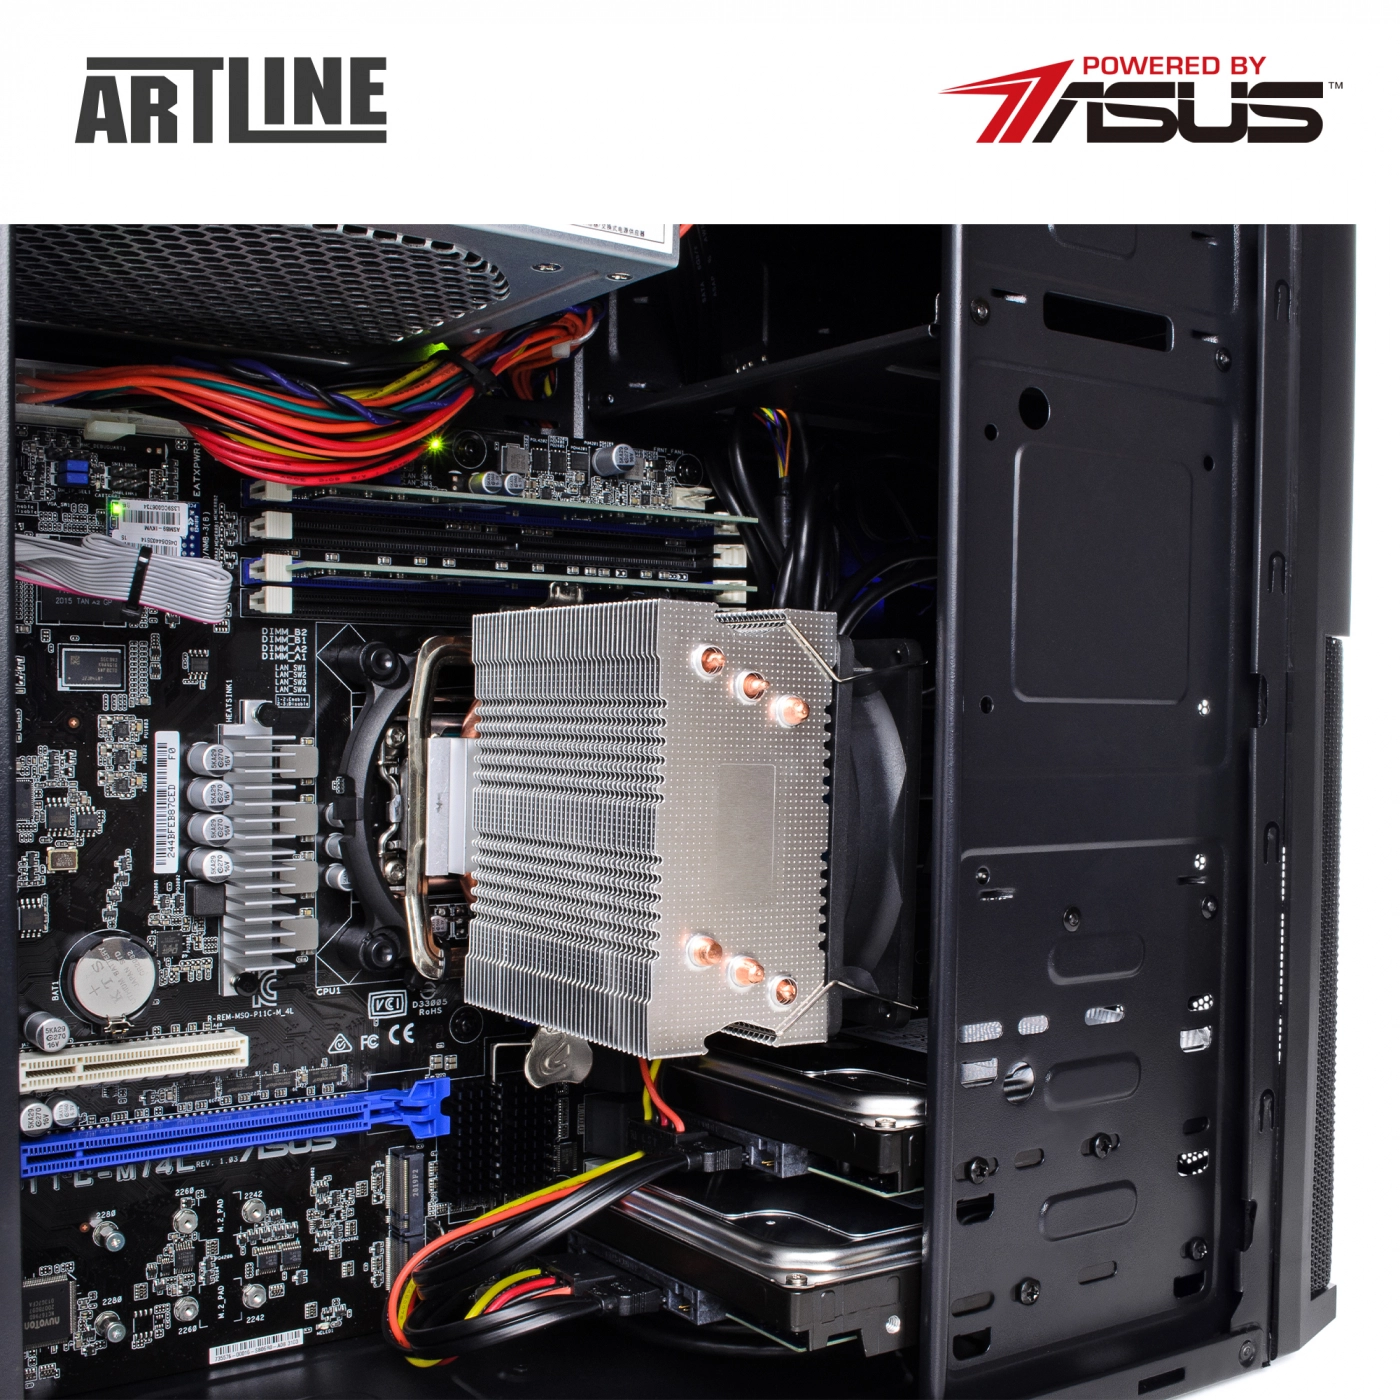 Купить Сервер ARTLINE Business T25v14 - фото 7